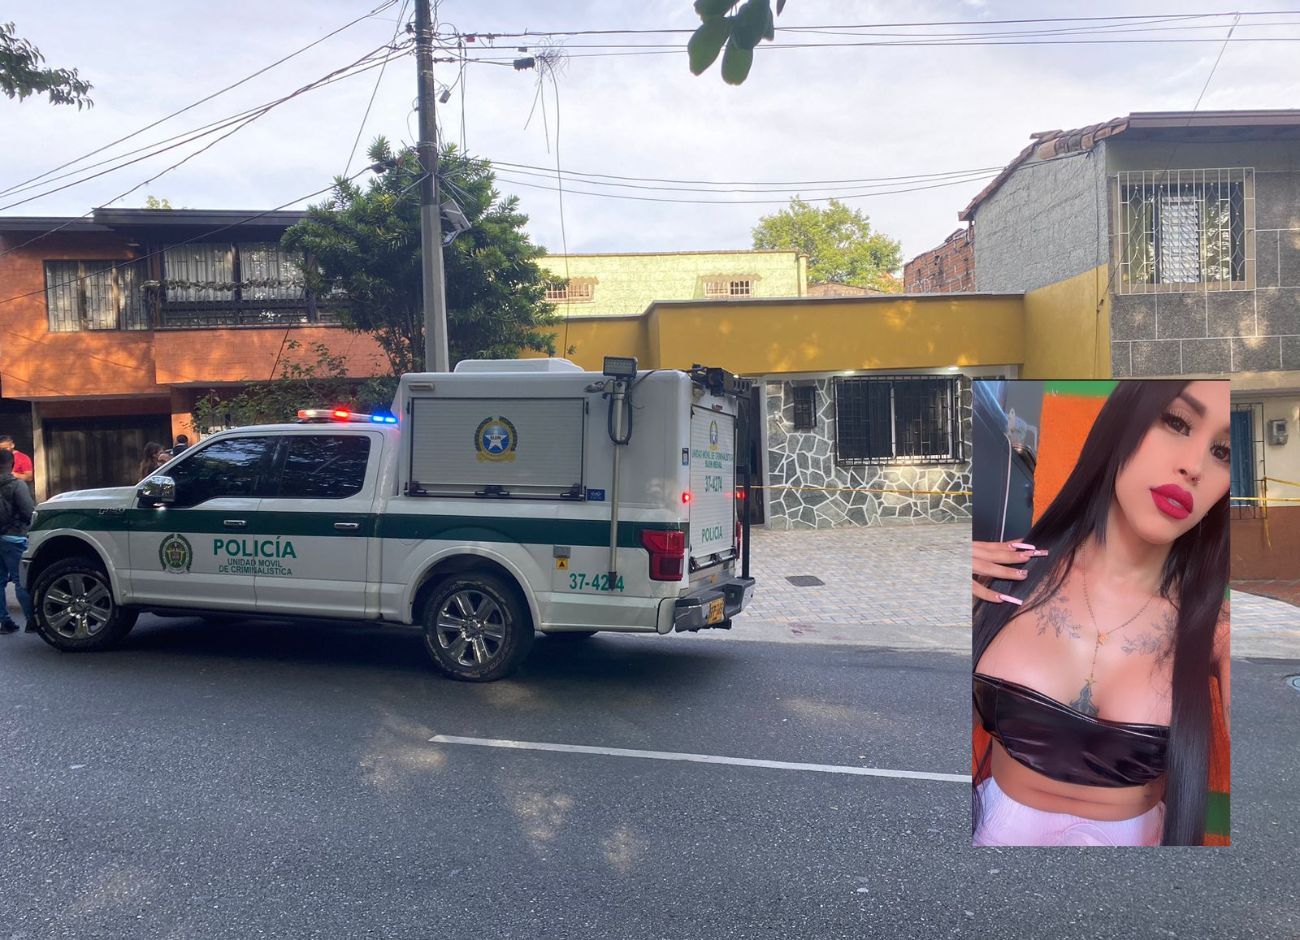 EN VIDEO: Asesinaron a puñaladas a persona transgénero dentro de un negocio en Belén